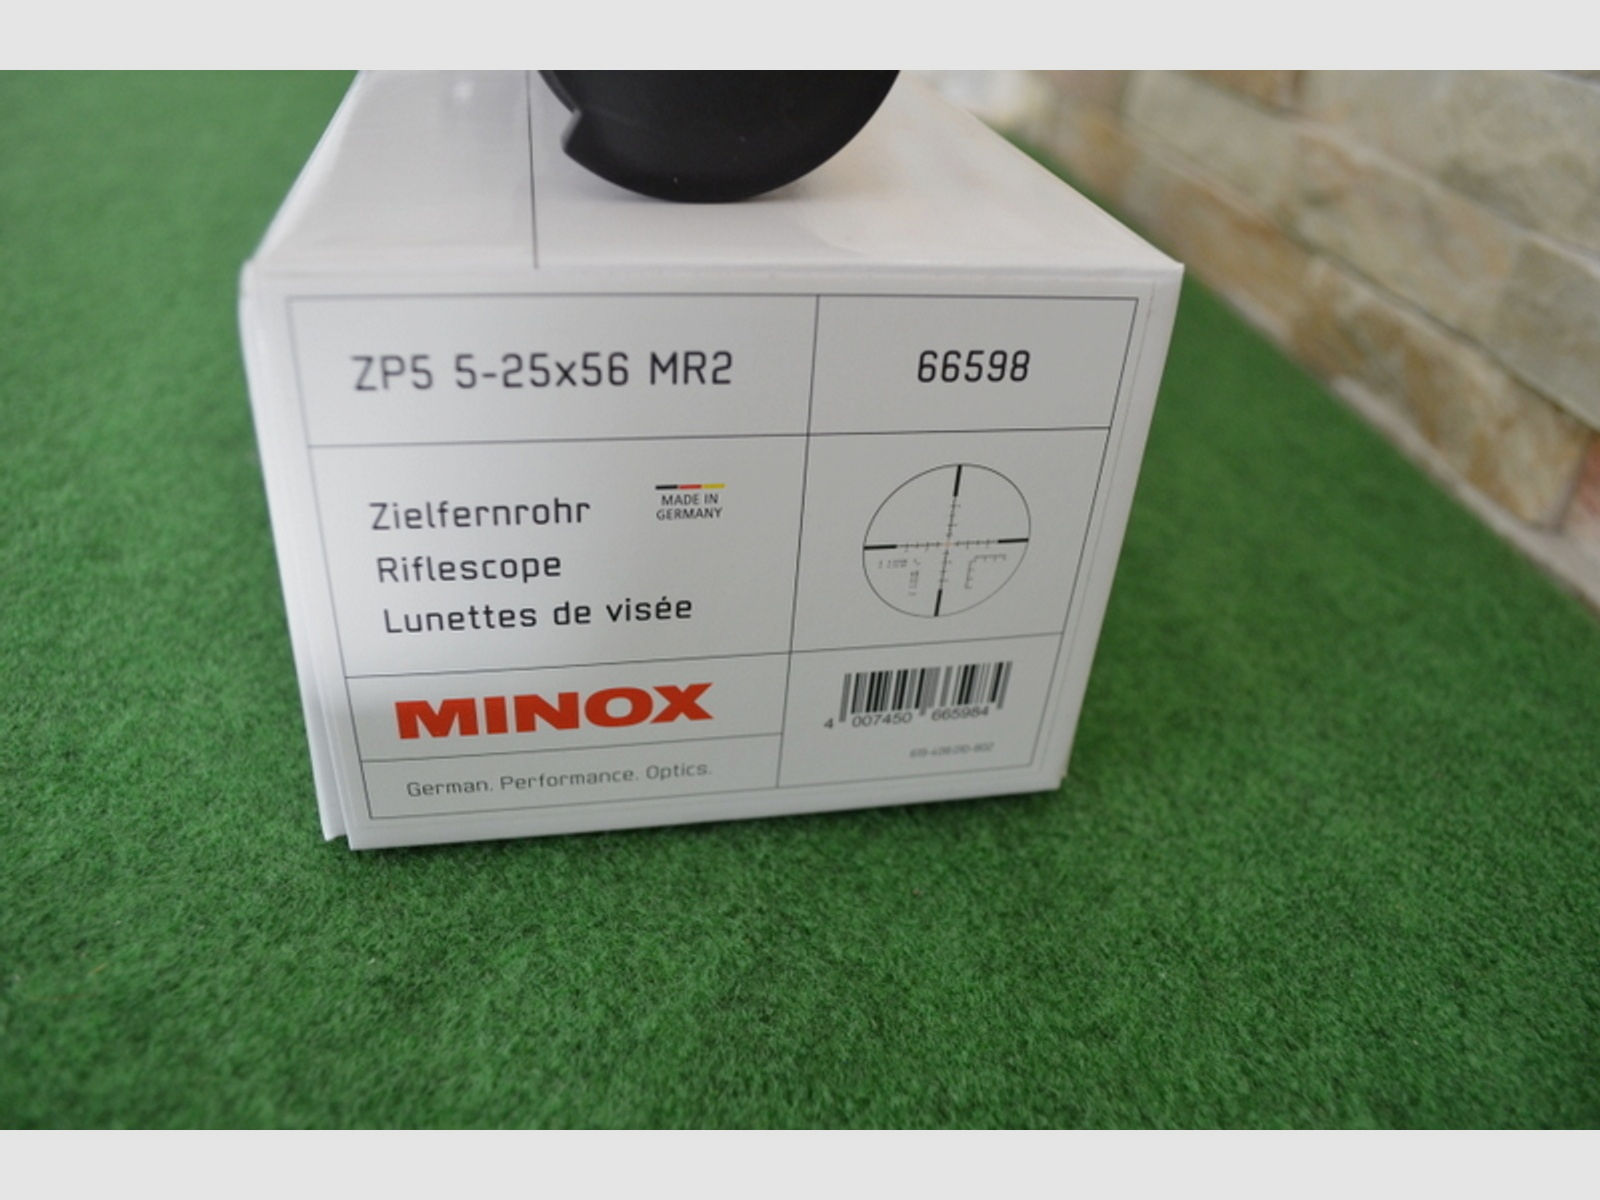 Minox ZP5 5-25x56